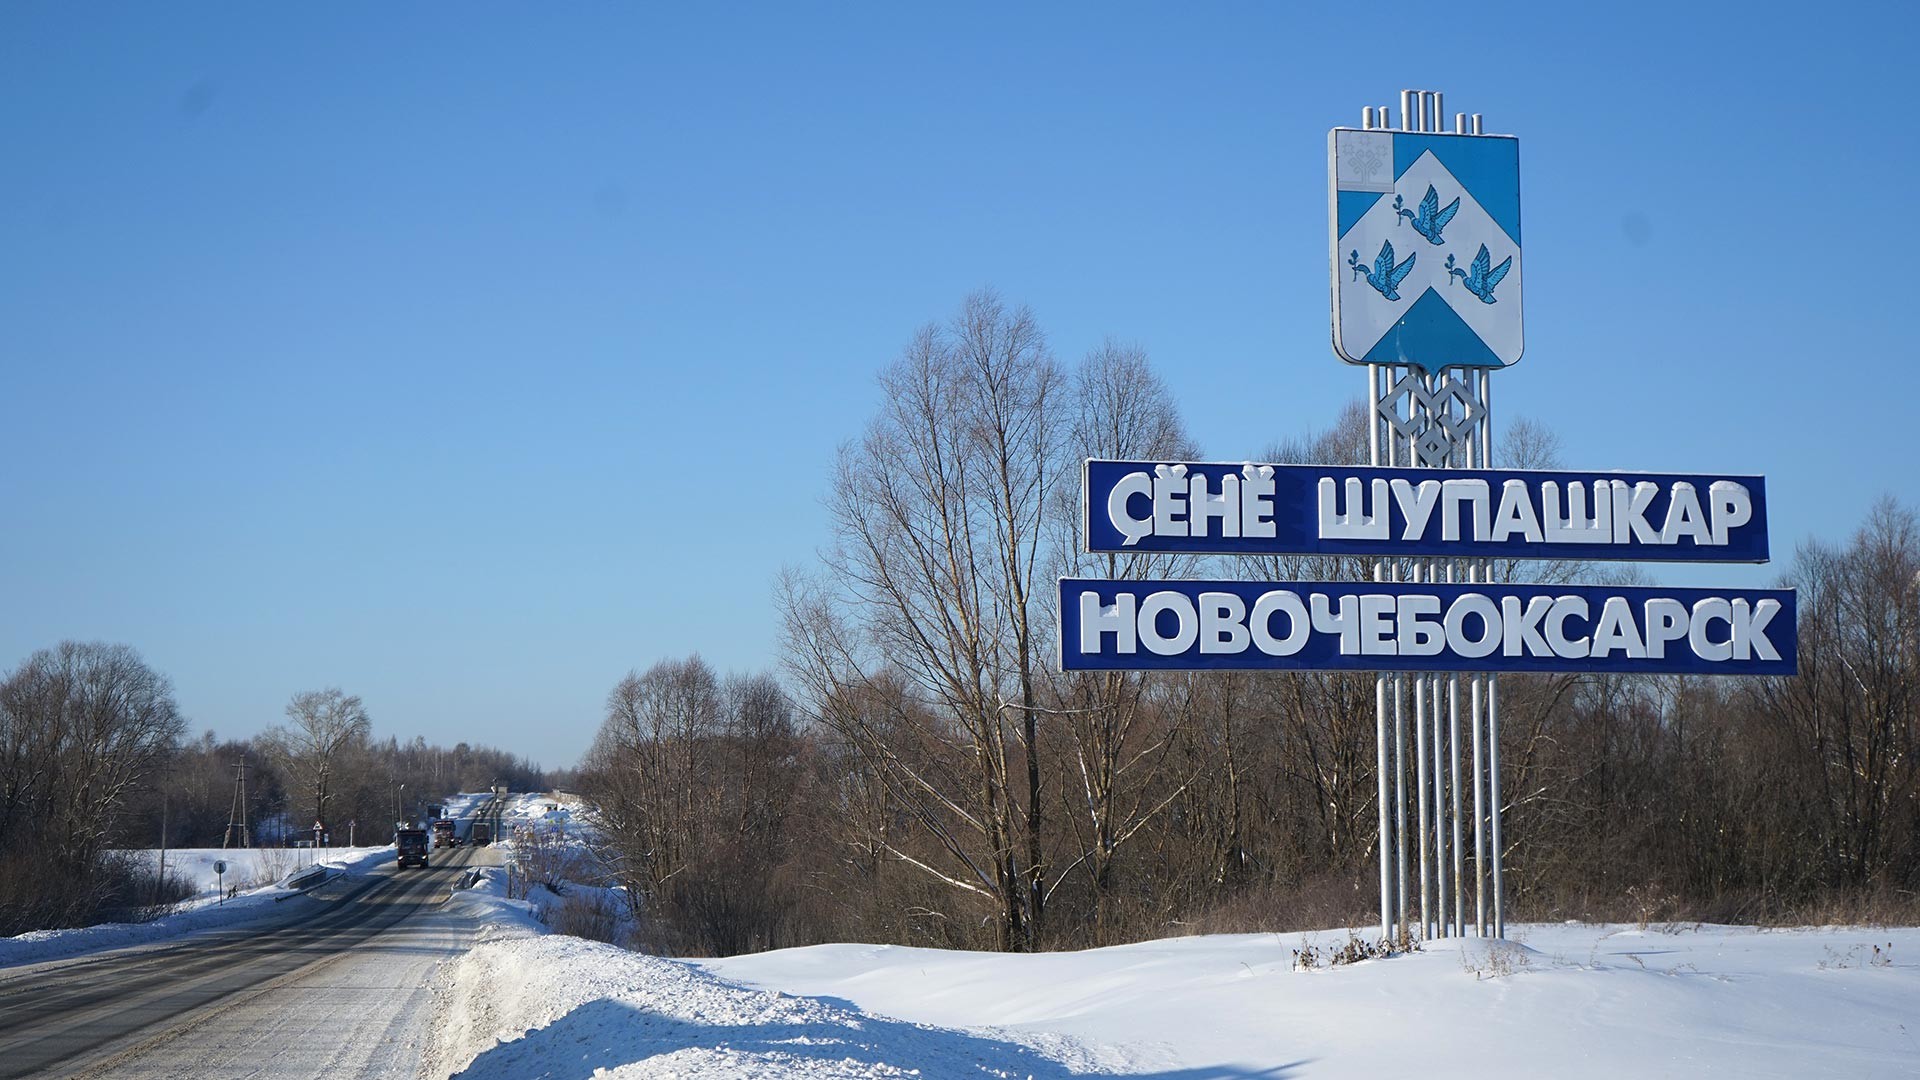 Pintu masuk ke Kota Novocheboksarsk, Republik Chuvashia.

